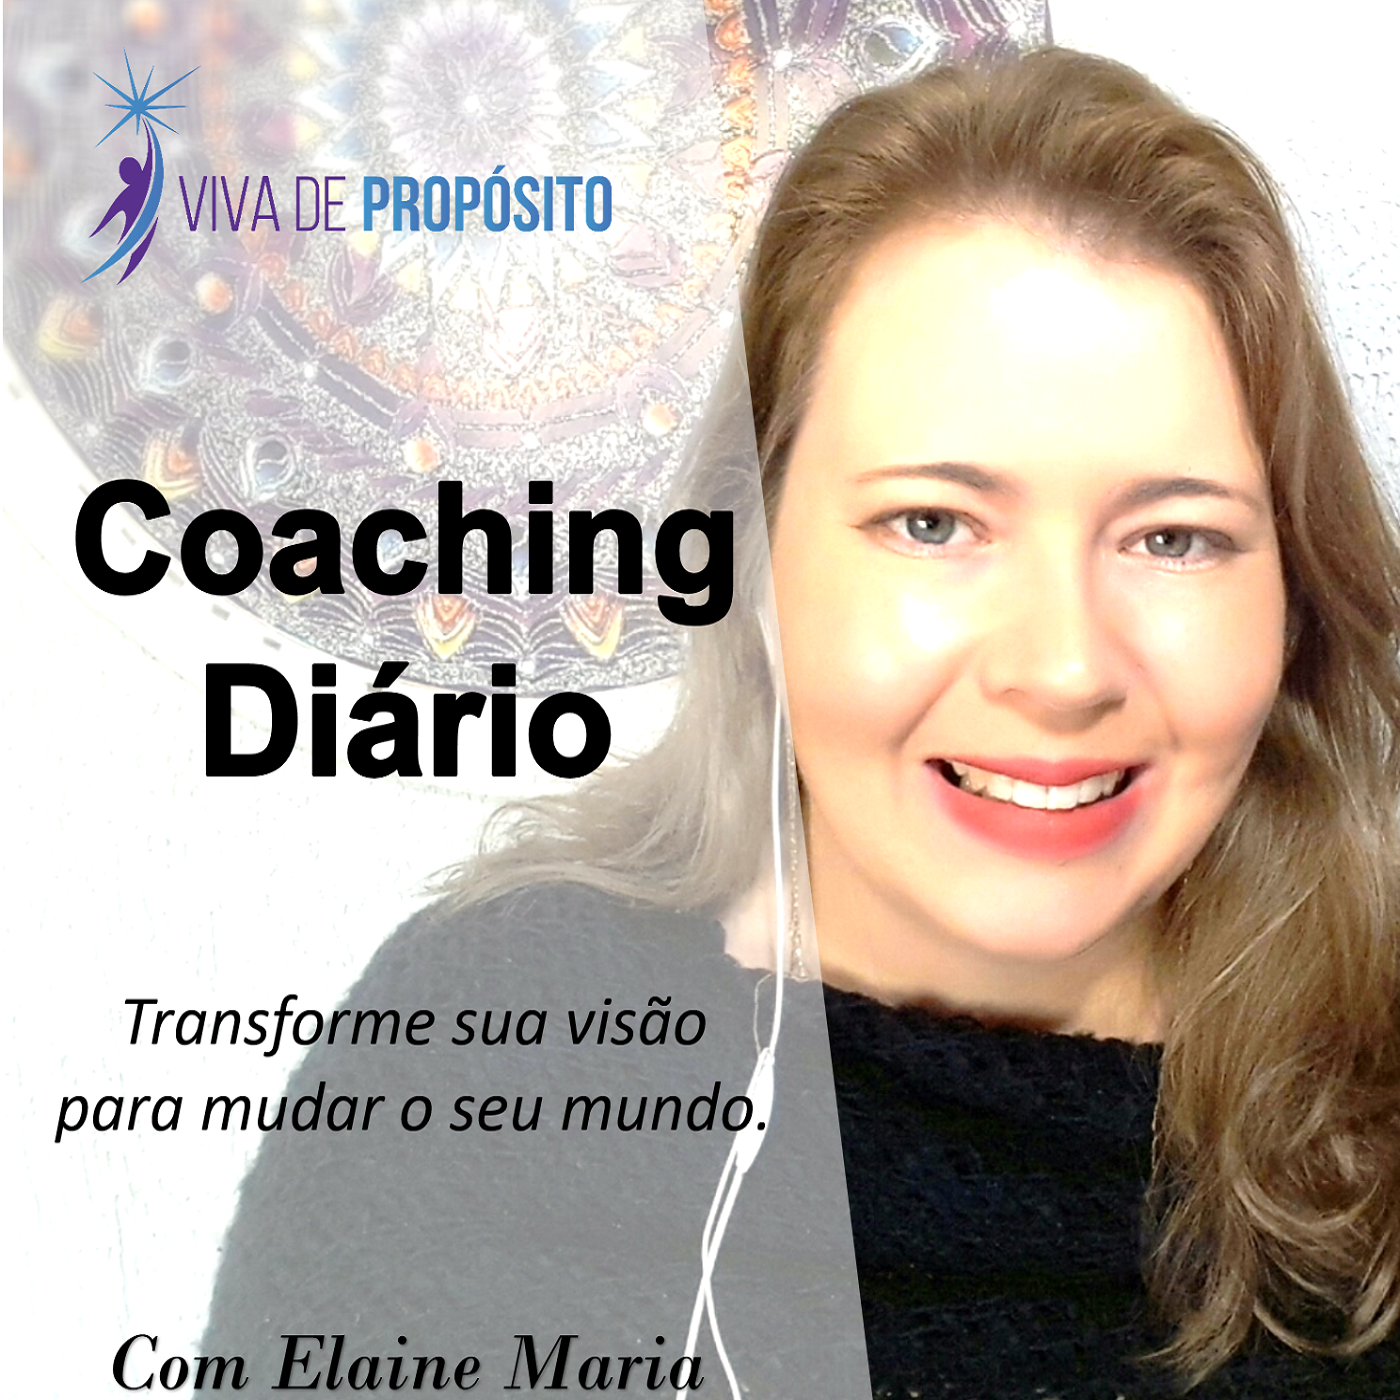 Coaching Diário #265 – Encontre clareza através da oposição